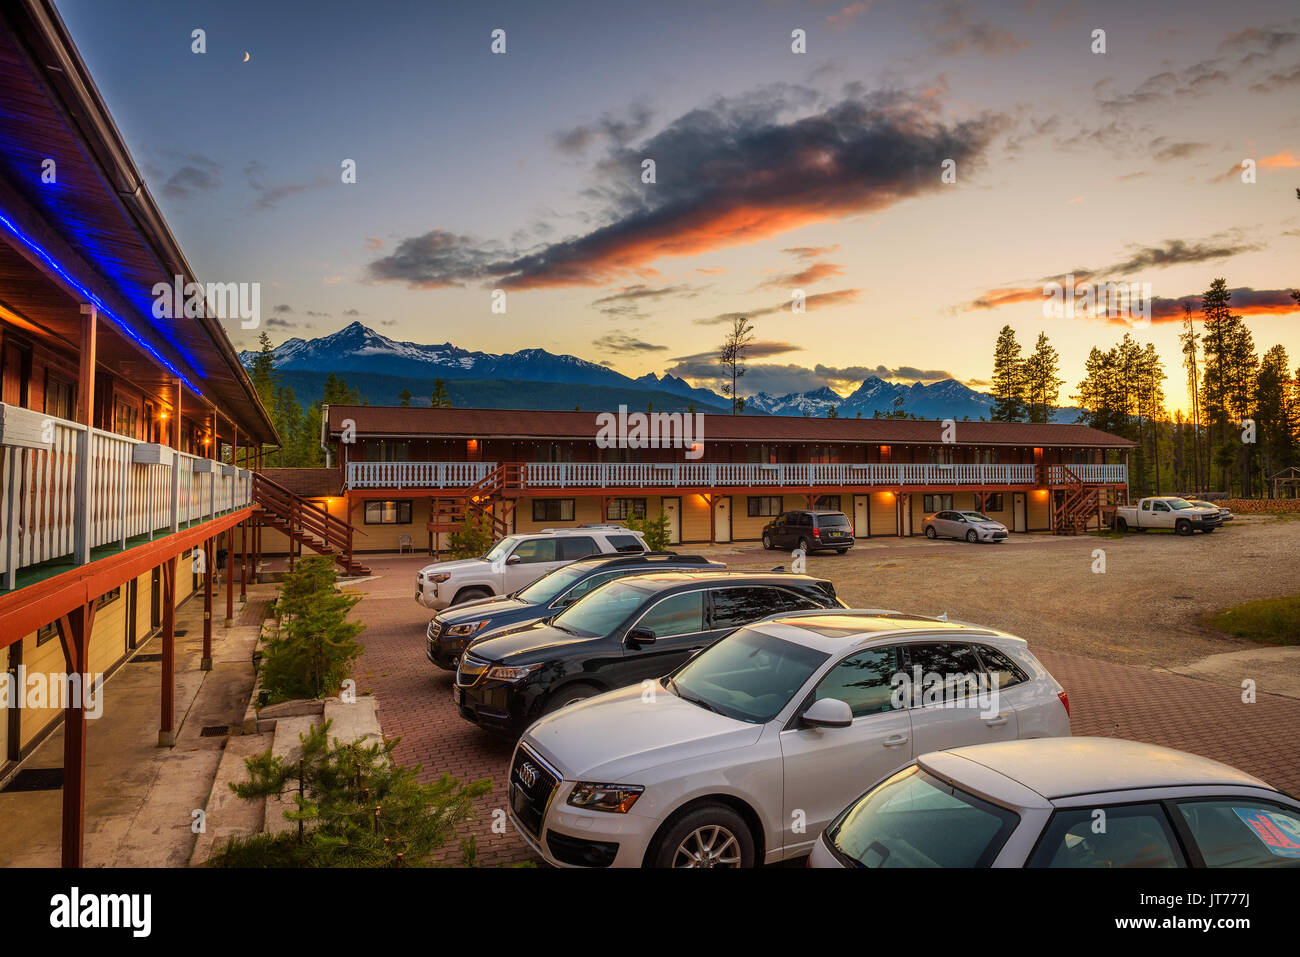 VALEMOUNT, Canadá - 29 de junio de 2017 : Verano puestas de sol sobre las Montañas Rocosas canadienses y el Rocky Inn en Valemount. Foto de stock